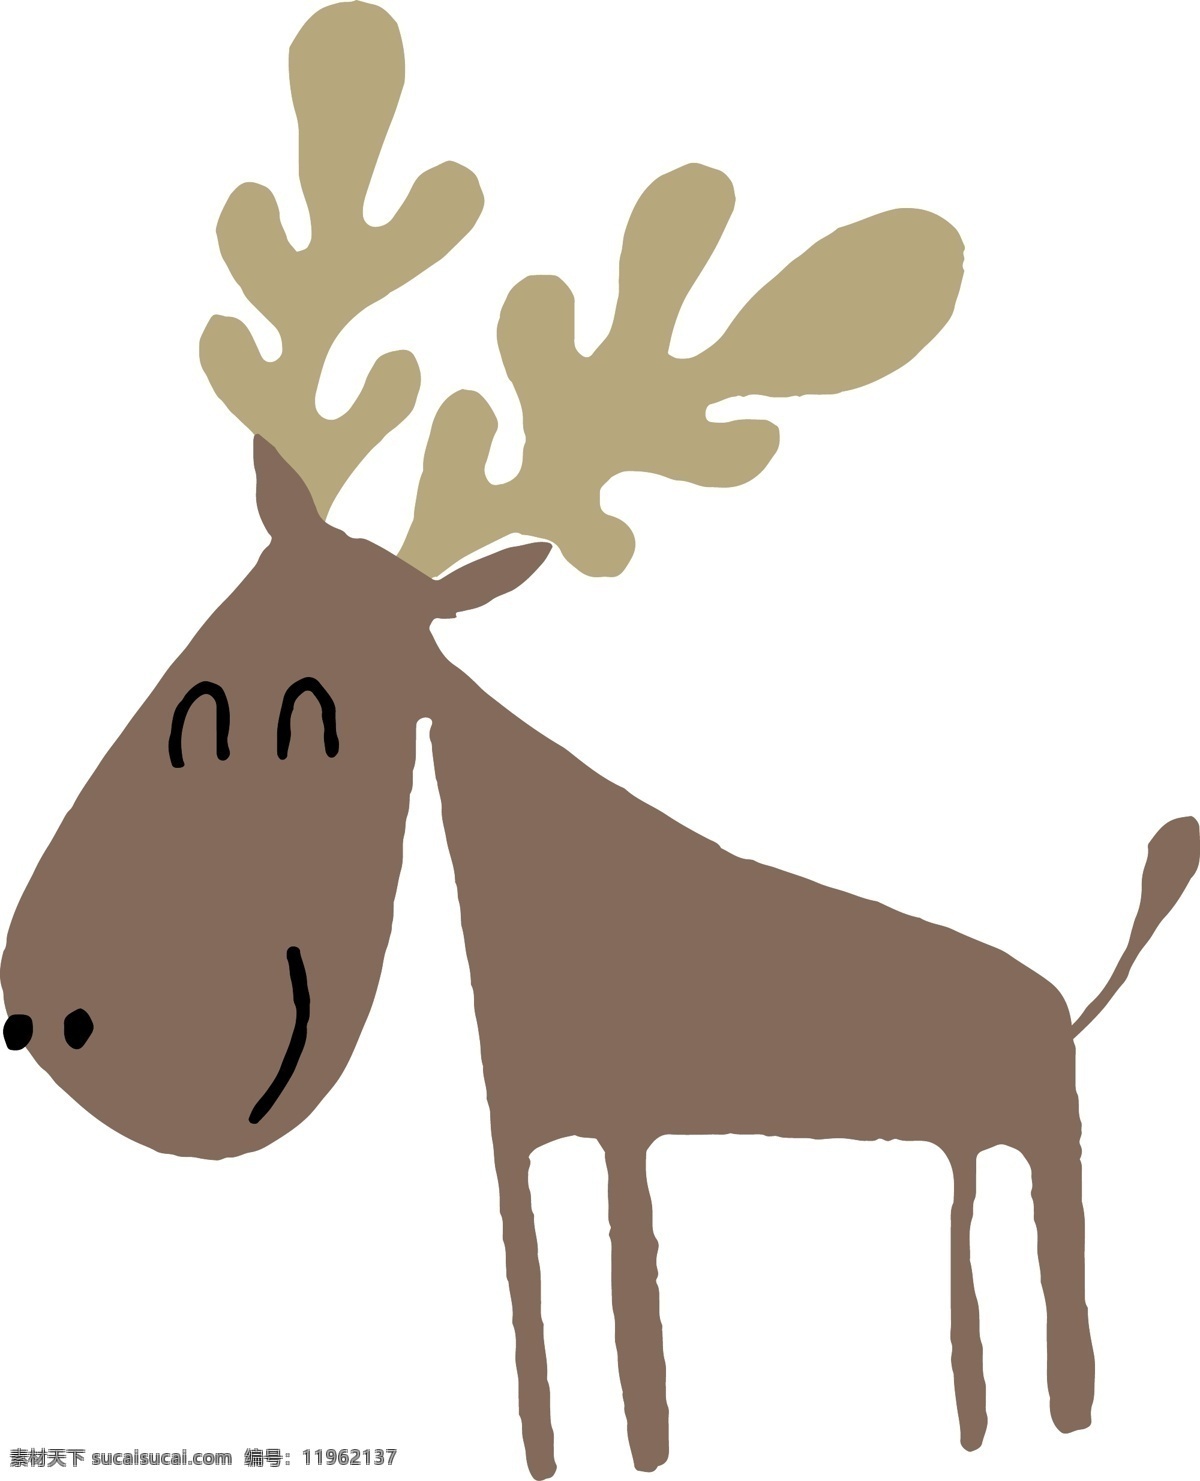 矢量 扁平 儿童画 可爱 驯鹿 矢量扁平 可爱动物 树木 幼儿园 墙绘 简单动物 春天 卡通 儿童 手抄报 可爱驯鹿 圣诞 免抠